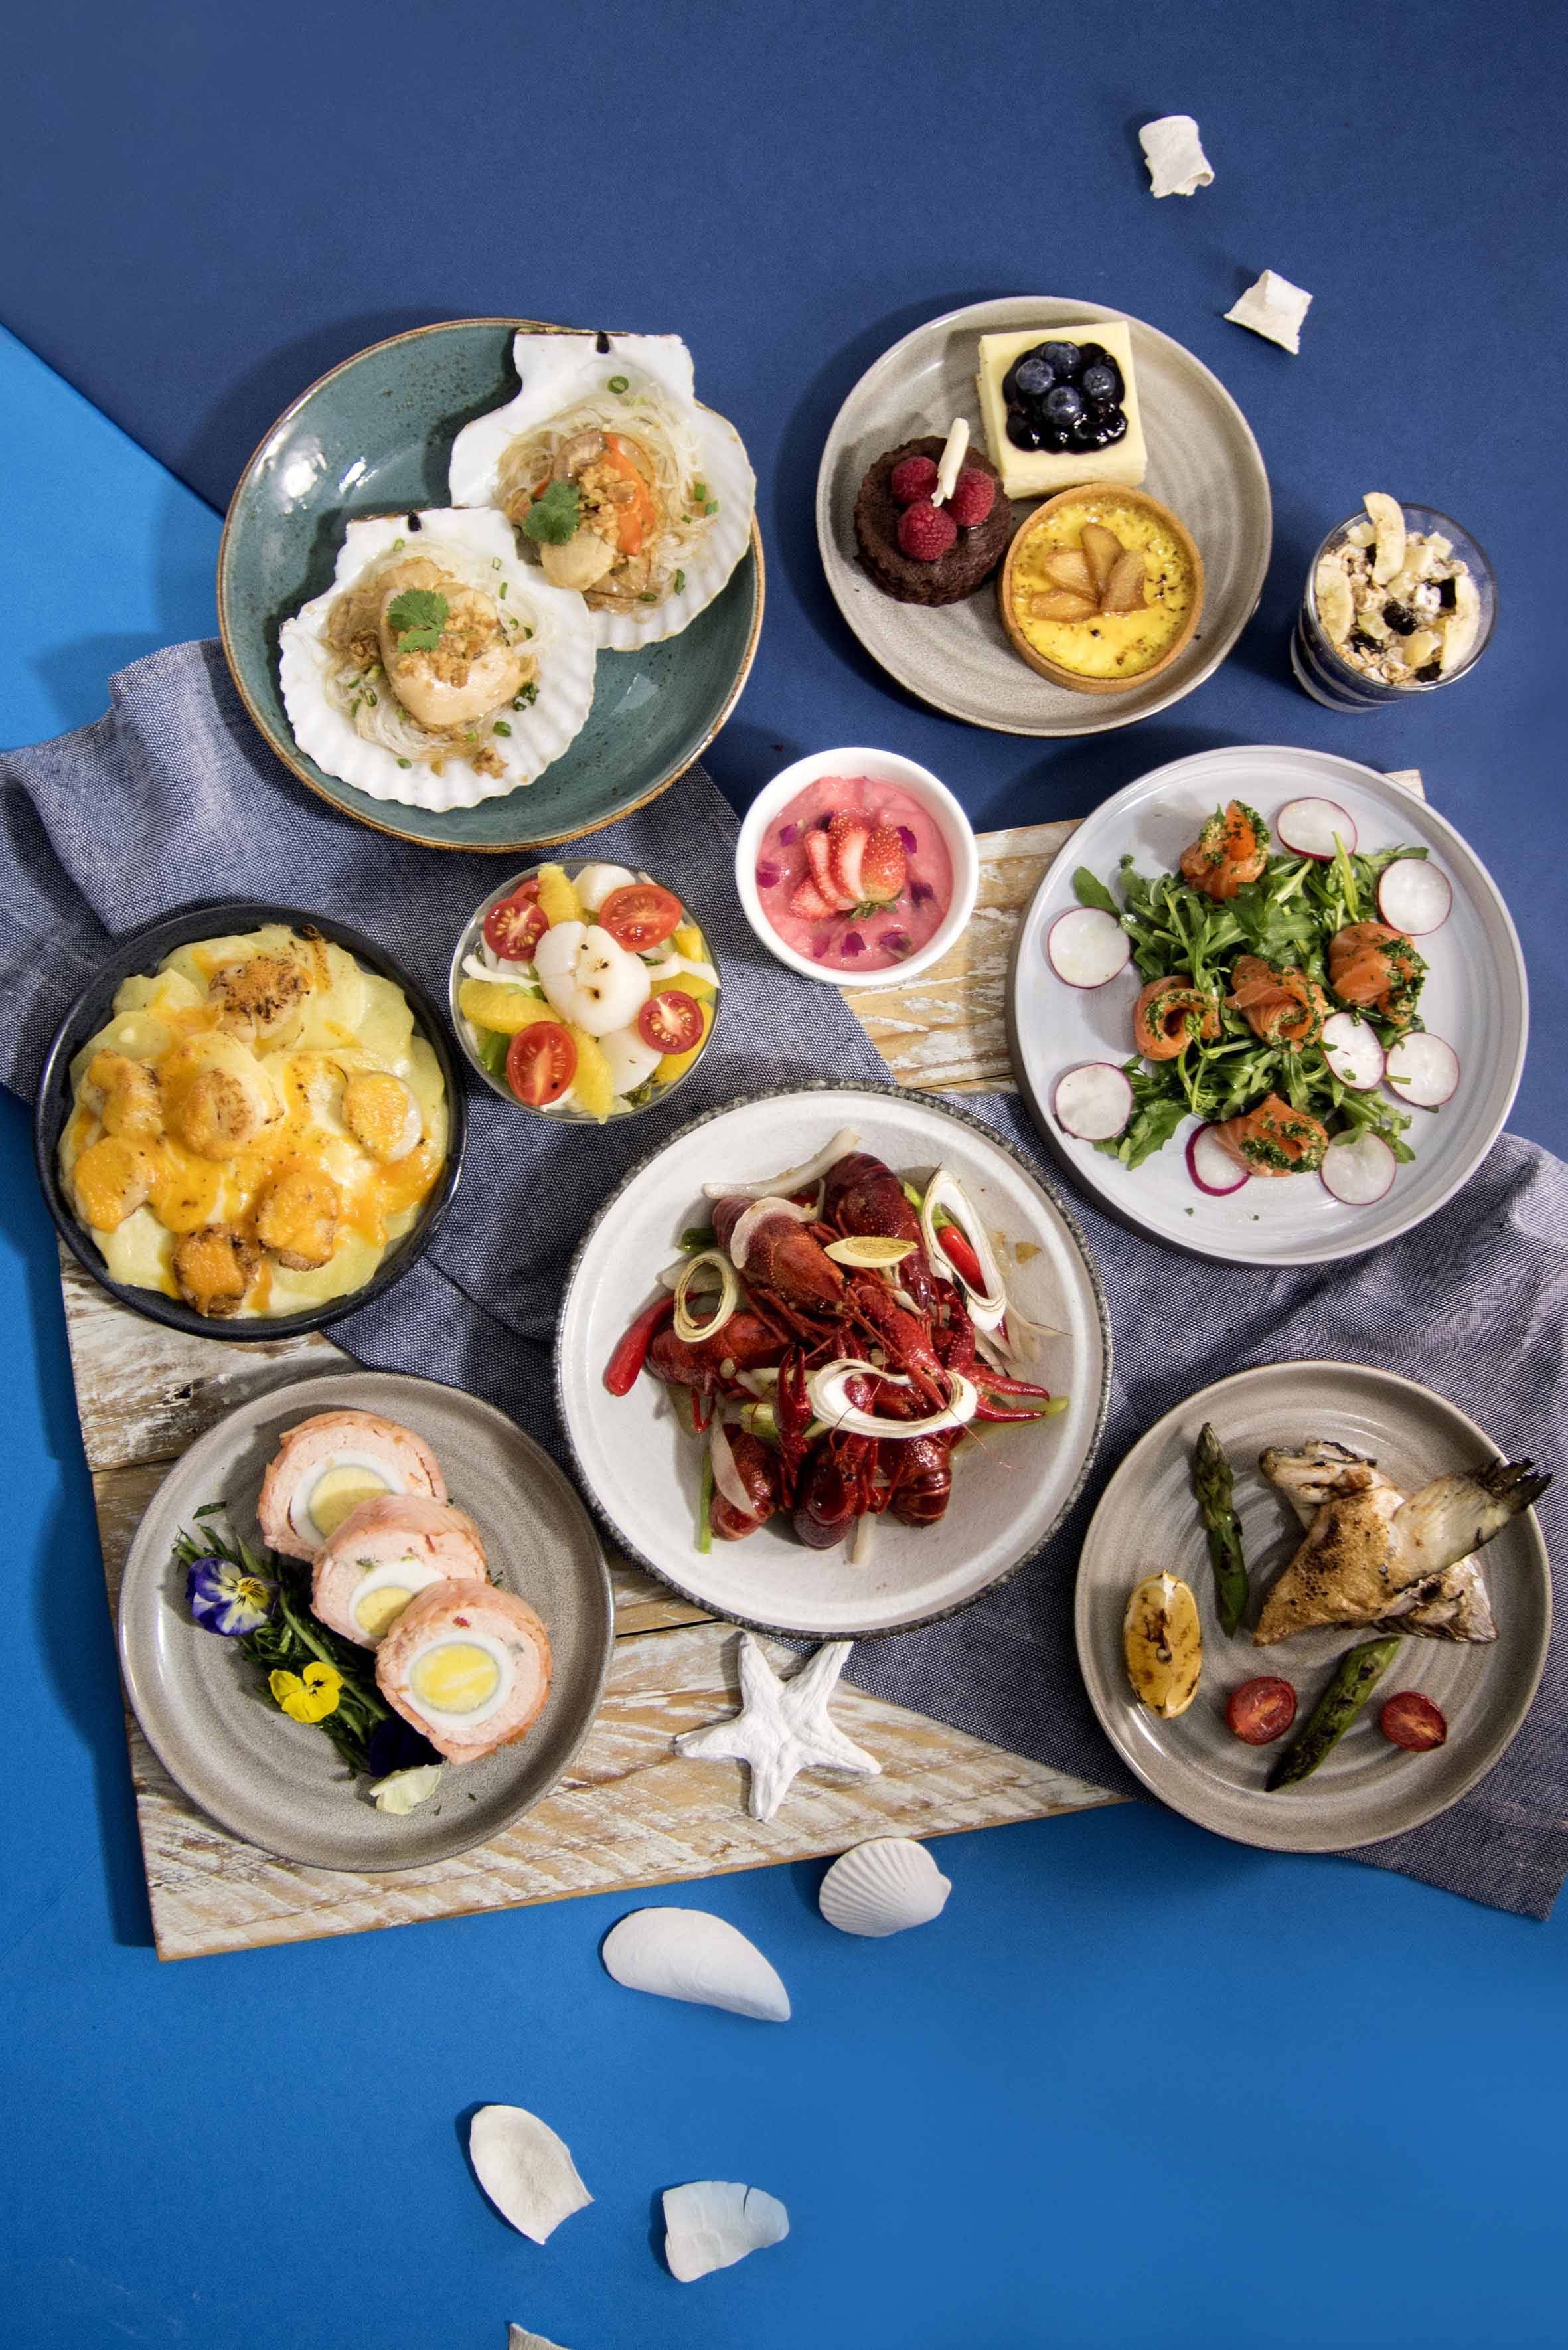 自助餐 諾富特東薈城酒店推出以「小龍蝦、三文魚與扇貝」為主題的自助餐。